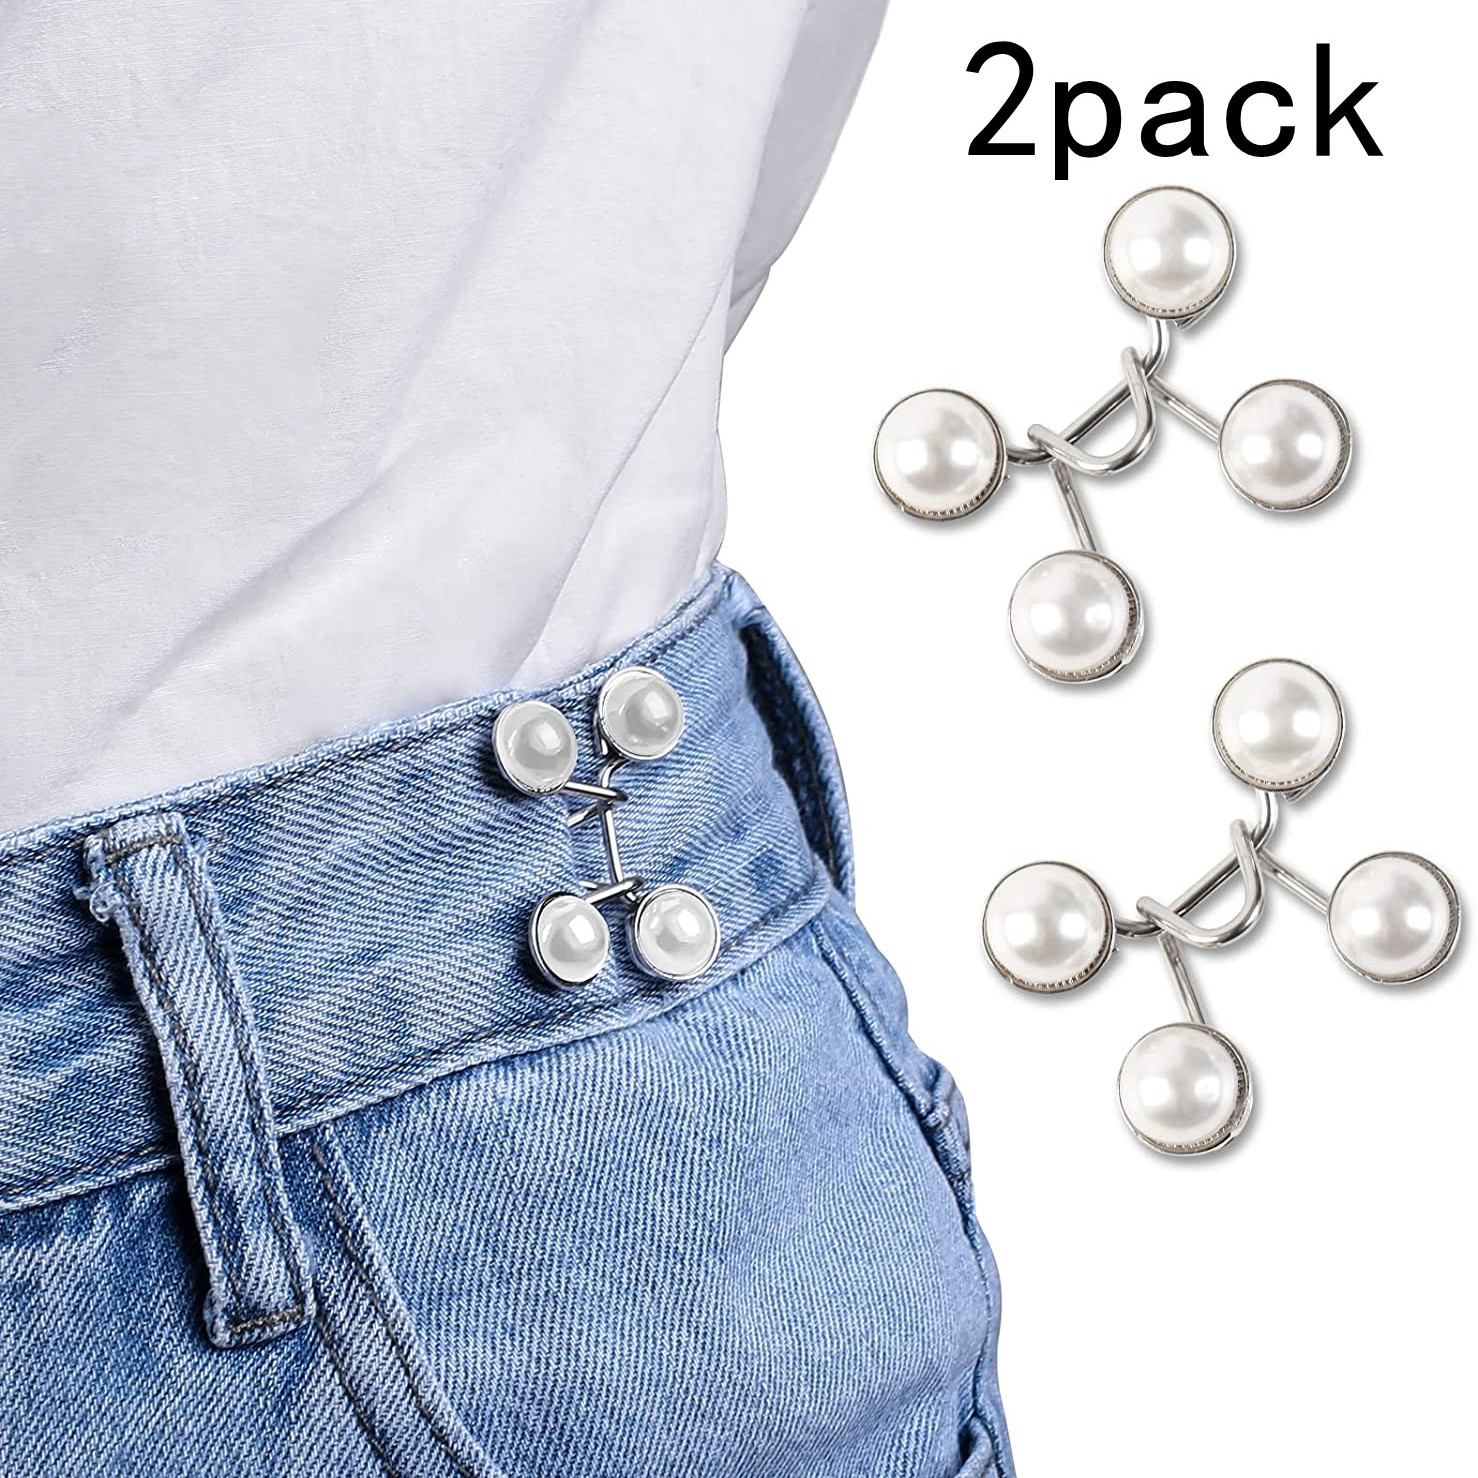 PANTS BUTTON CLIP For Jeans PinsAdjustable Metal Pant Tightener Waist Y8K3  $5.48 - PicClick AU